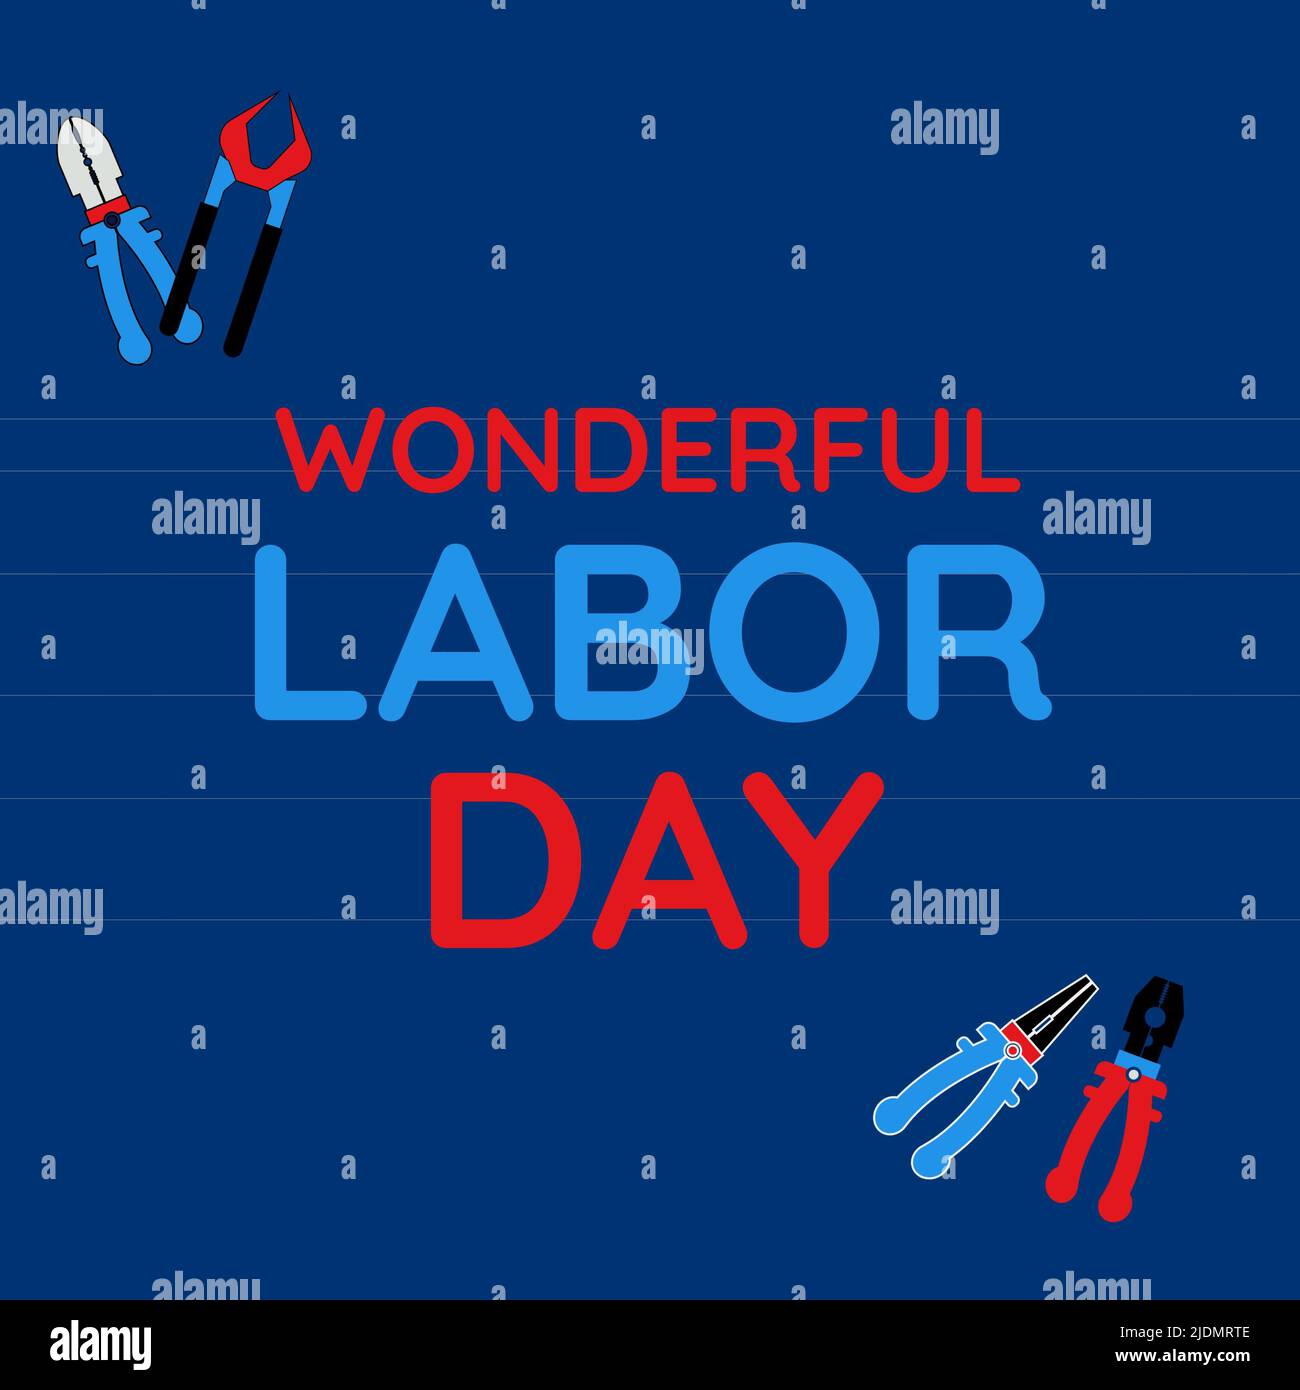 Illustratives Bild von wunderbaren Labor Day Text mit verschiedenen Handwerkzeugen vor blauem Hintergrund Stockfoto